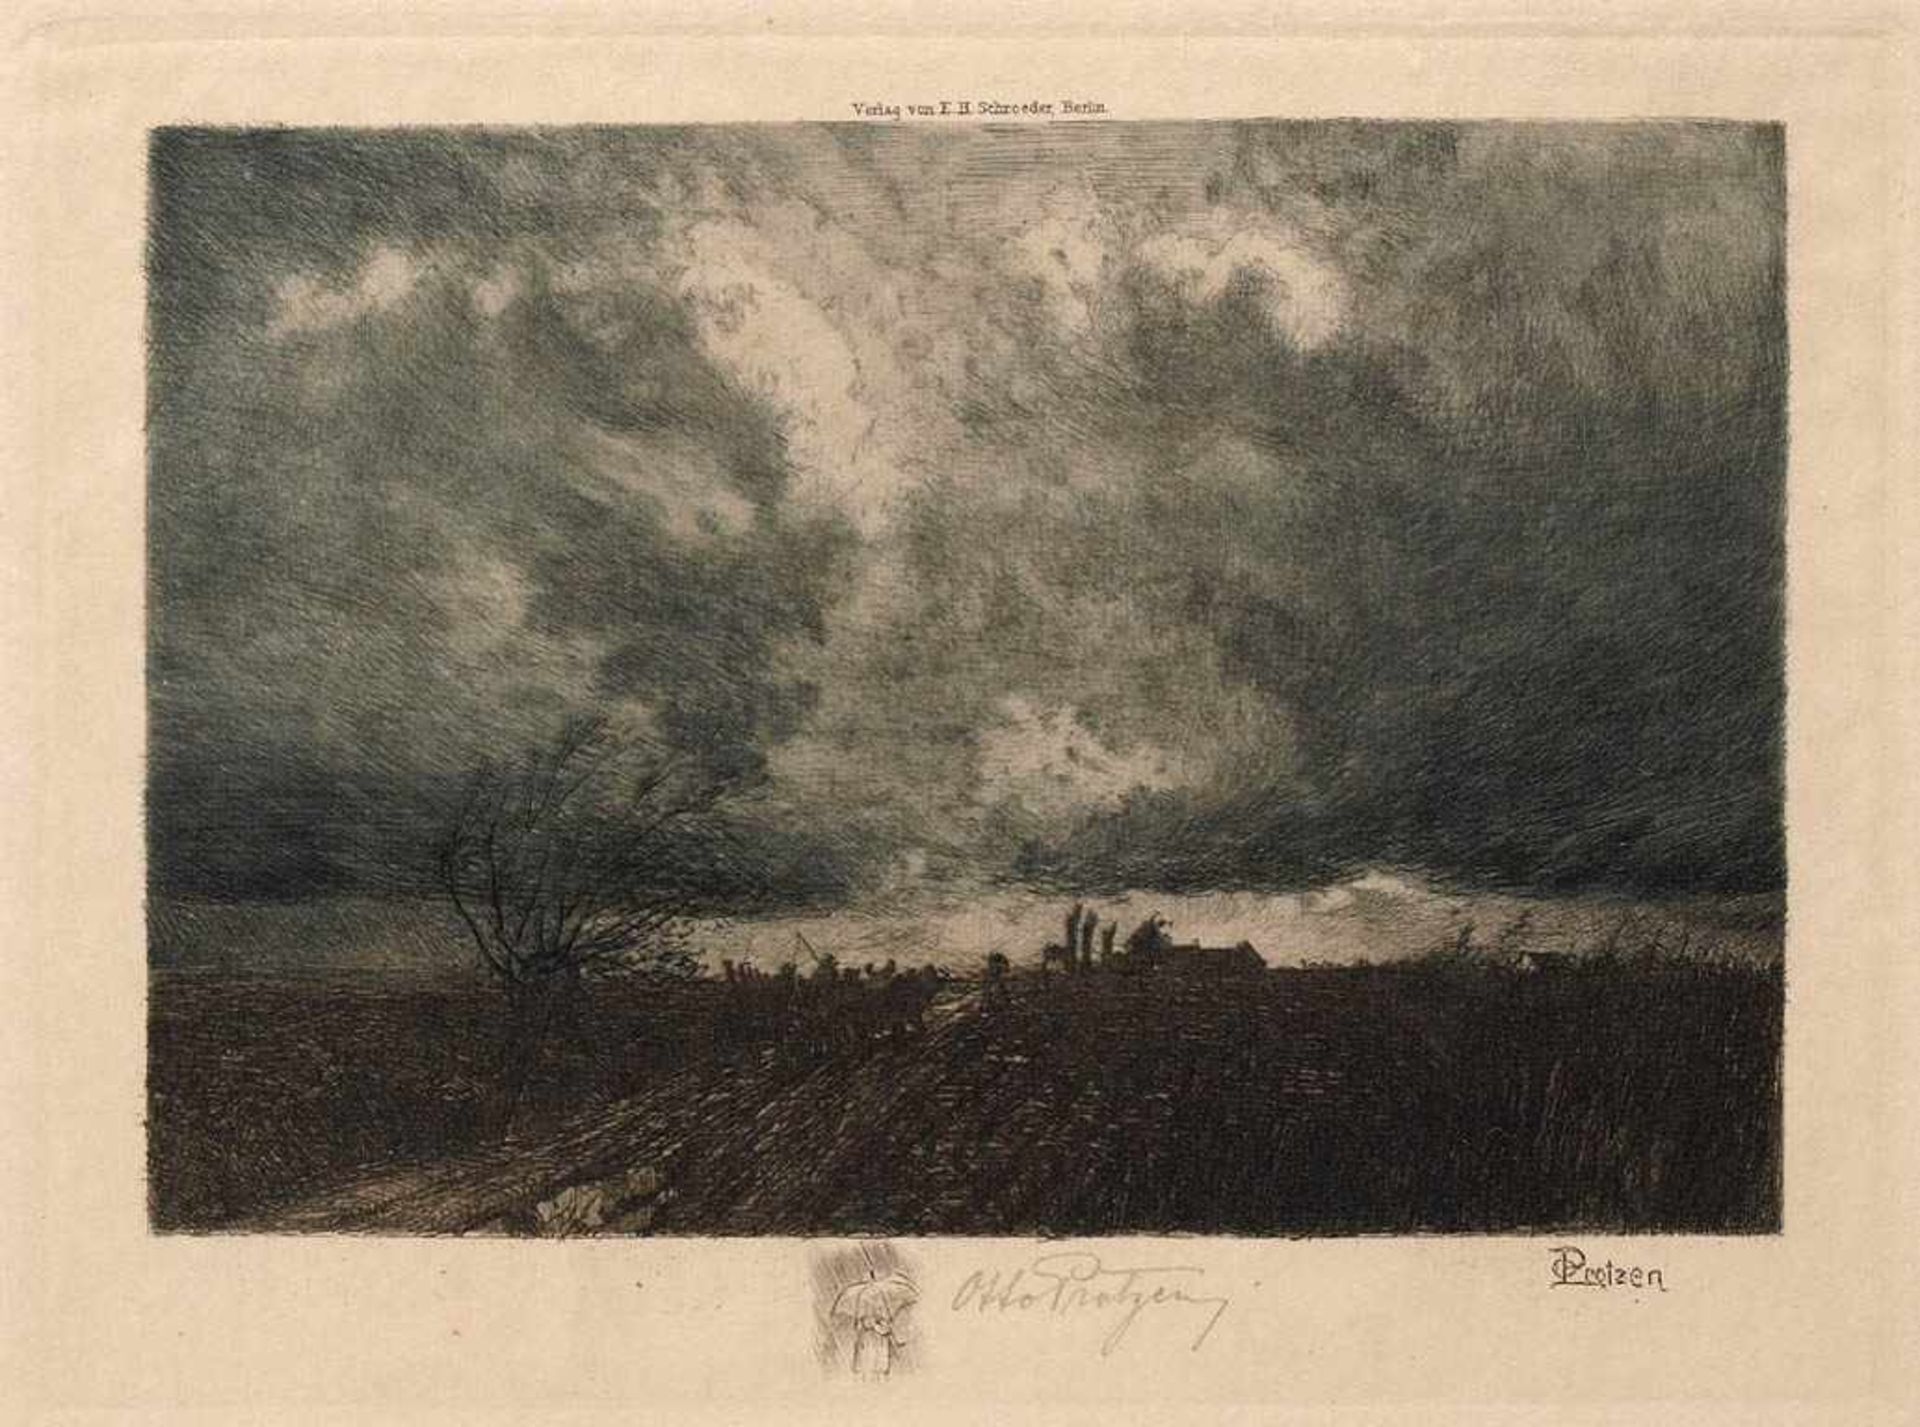 Protzen, Otto, 1868 - 1925Blick in die weite Ebene unter gewittrigem Himmel. Lithographie, rechts